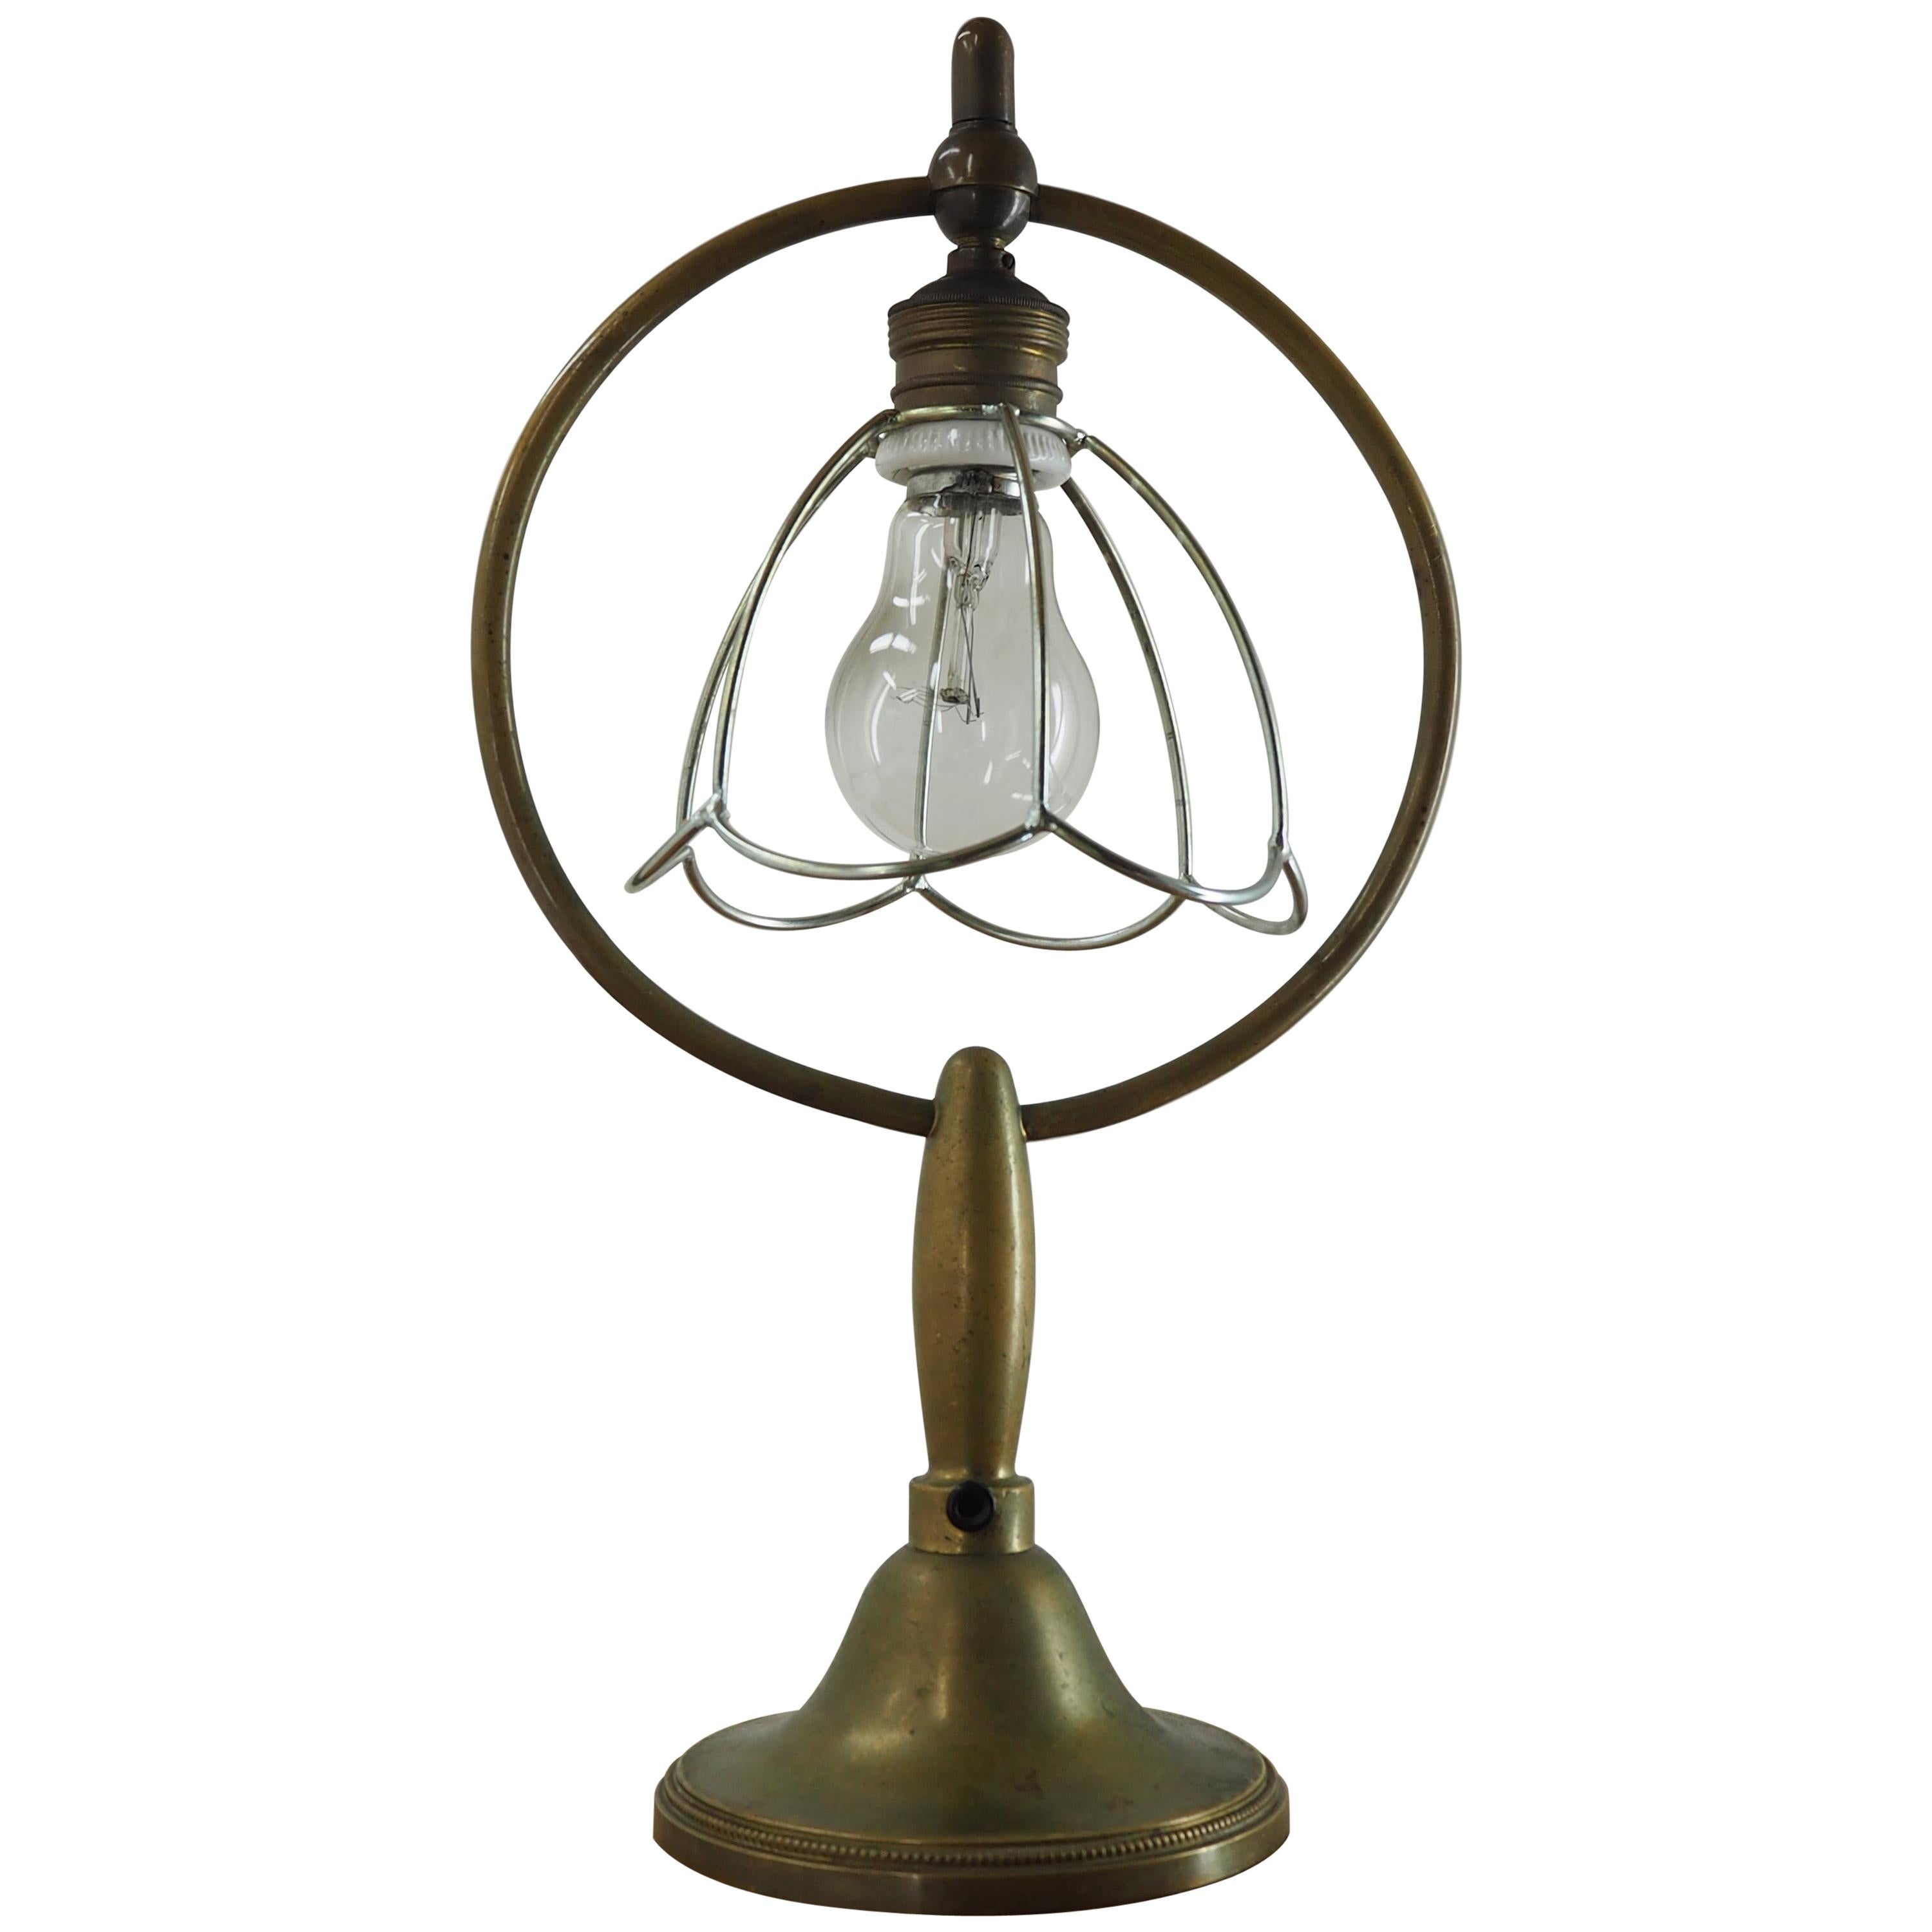 Art-Déco-Tischlampe aus Messing, 1930er Jahre